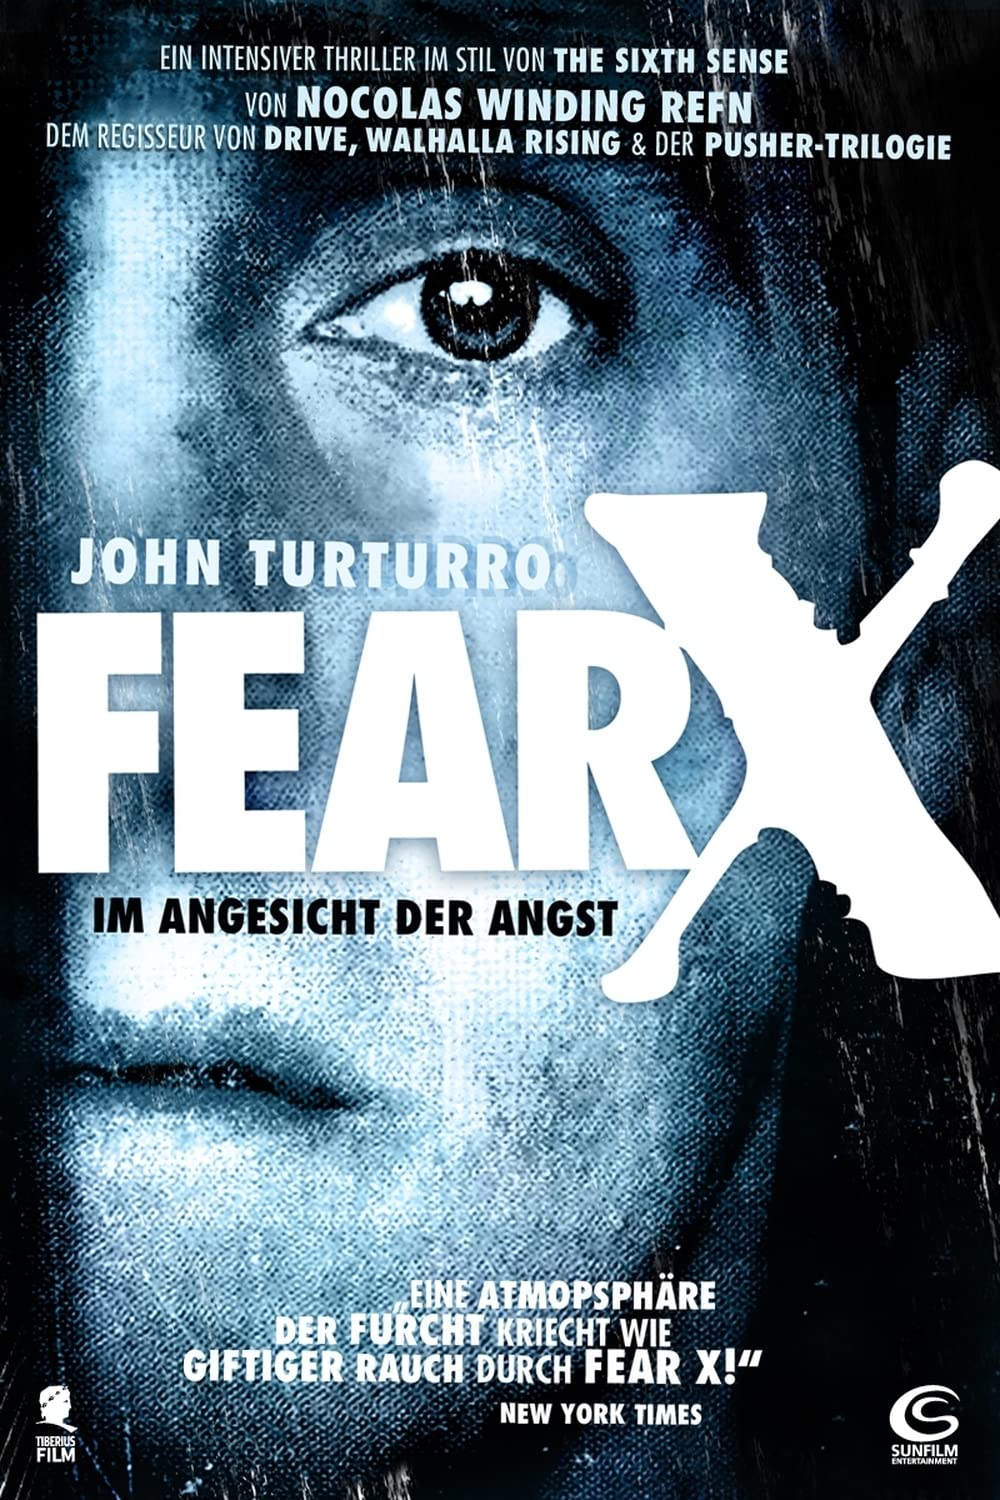 Fear X